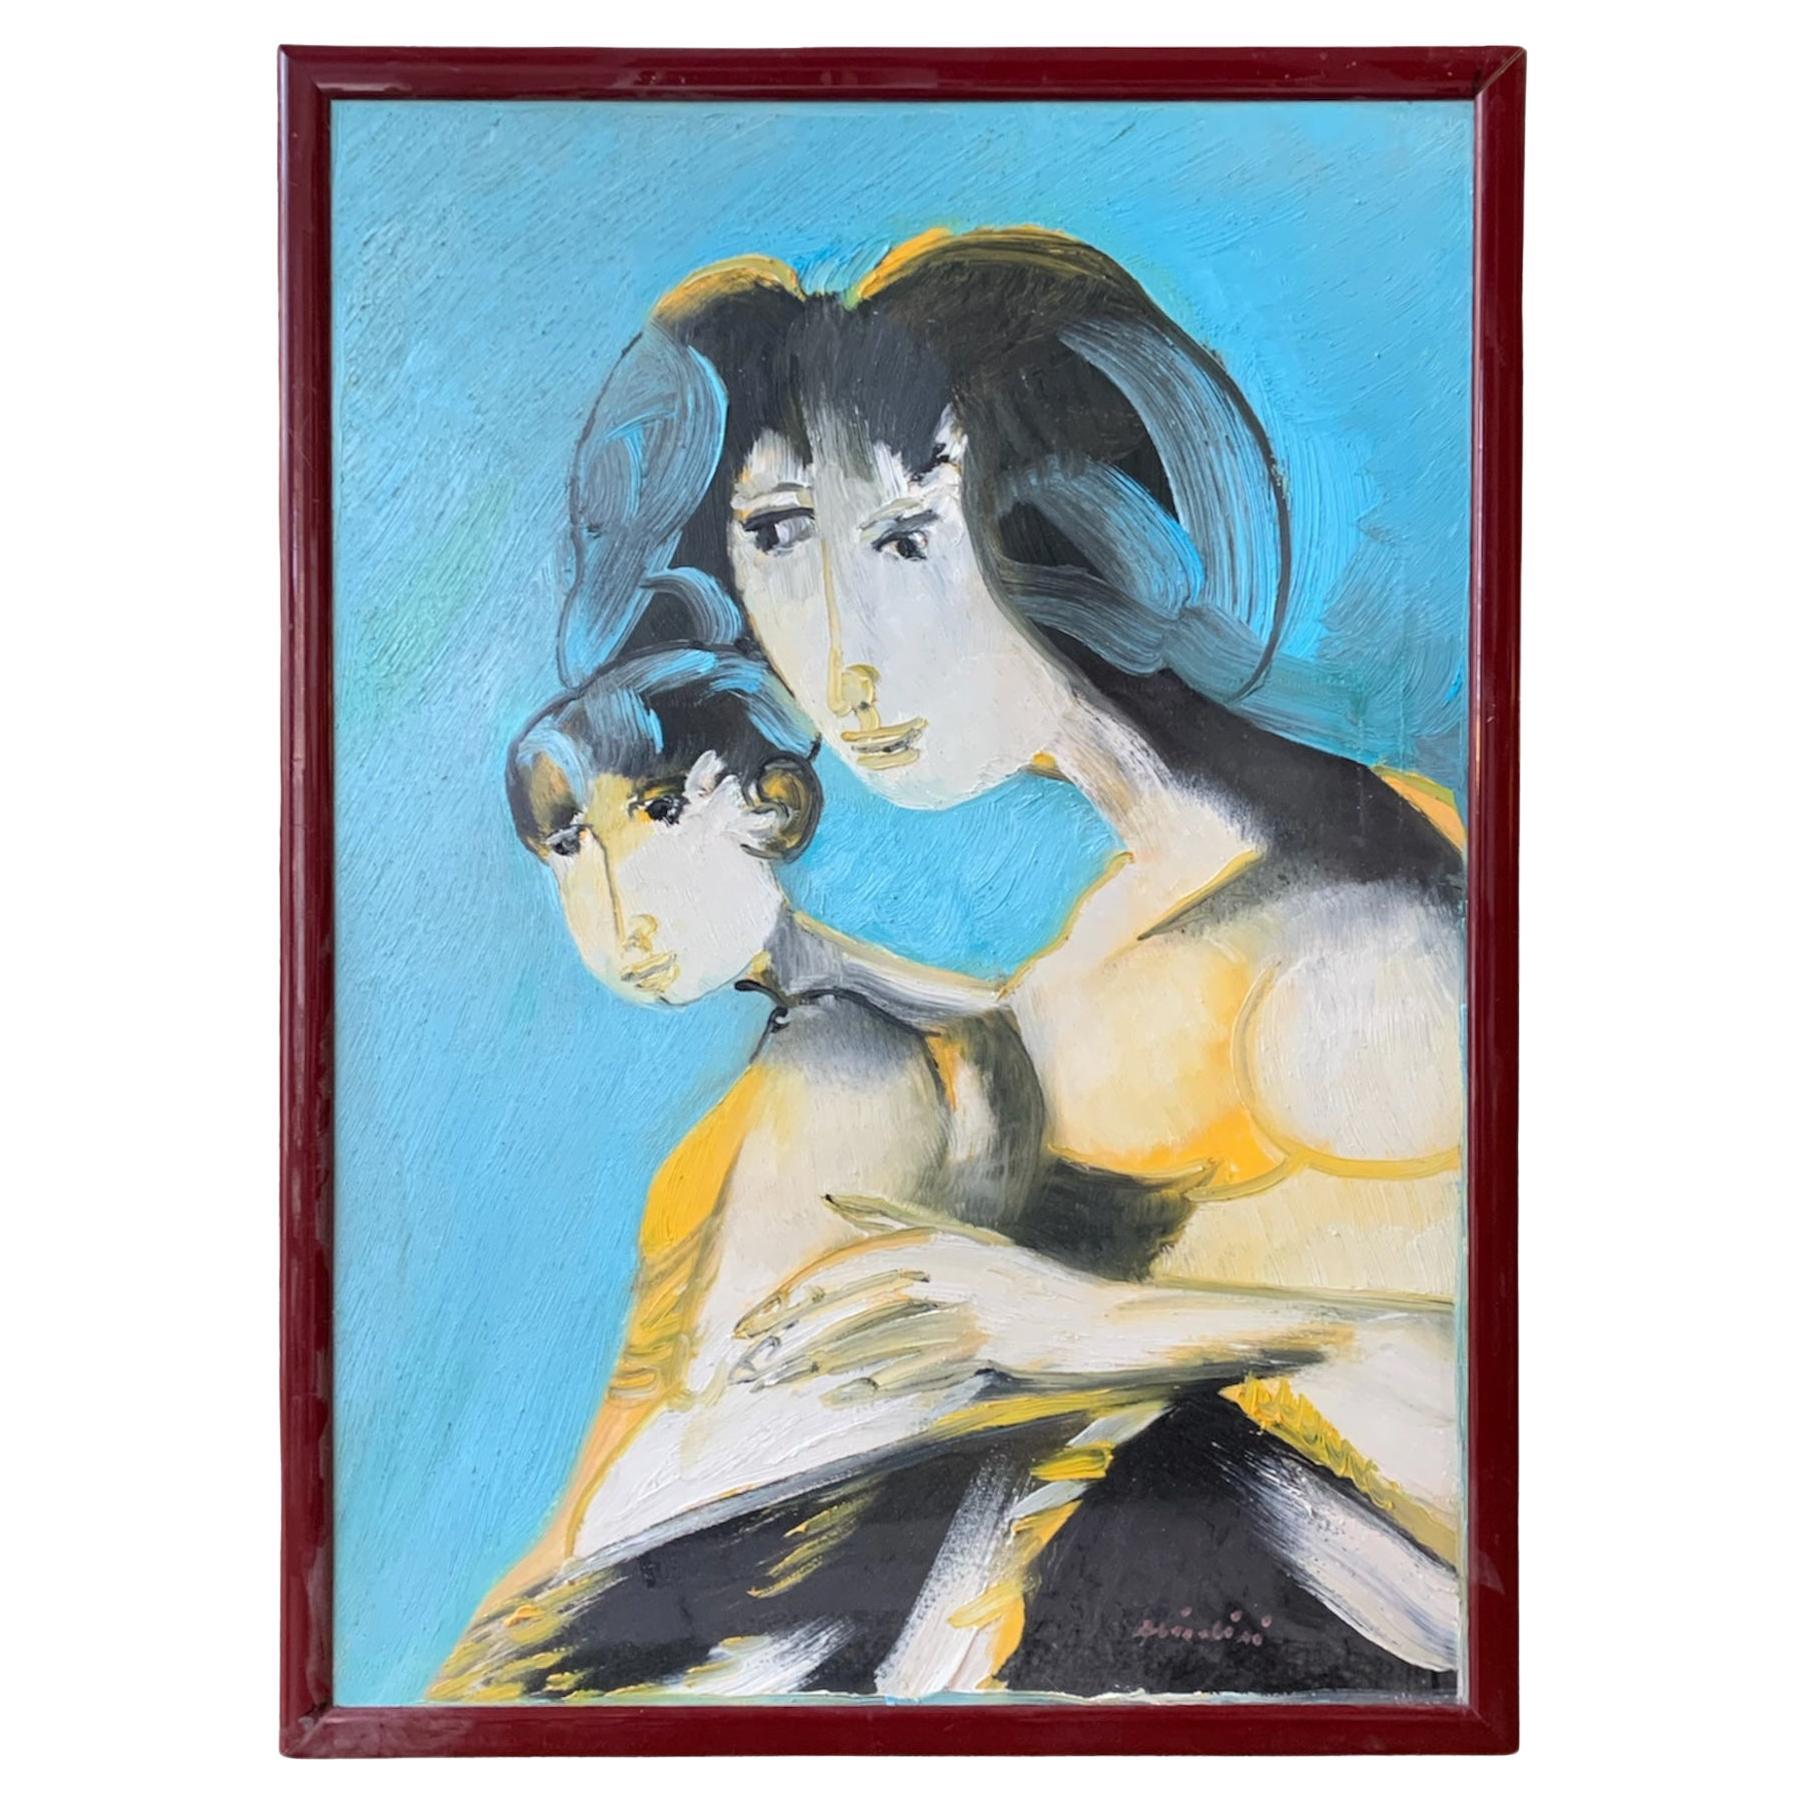 Ölgemälde auf leinwand von Remo Brindisi von Mutterschaft aus 1970s